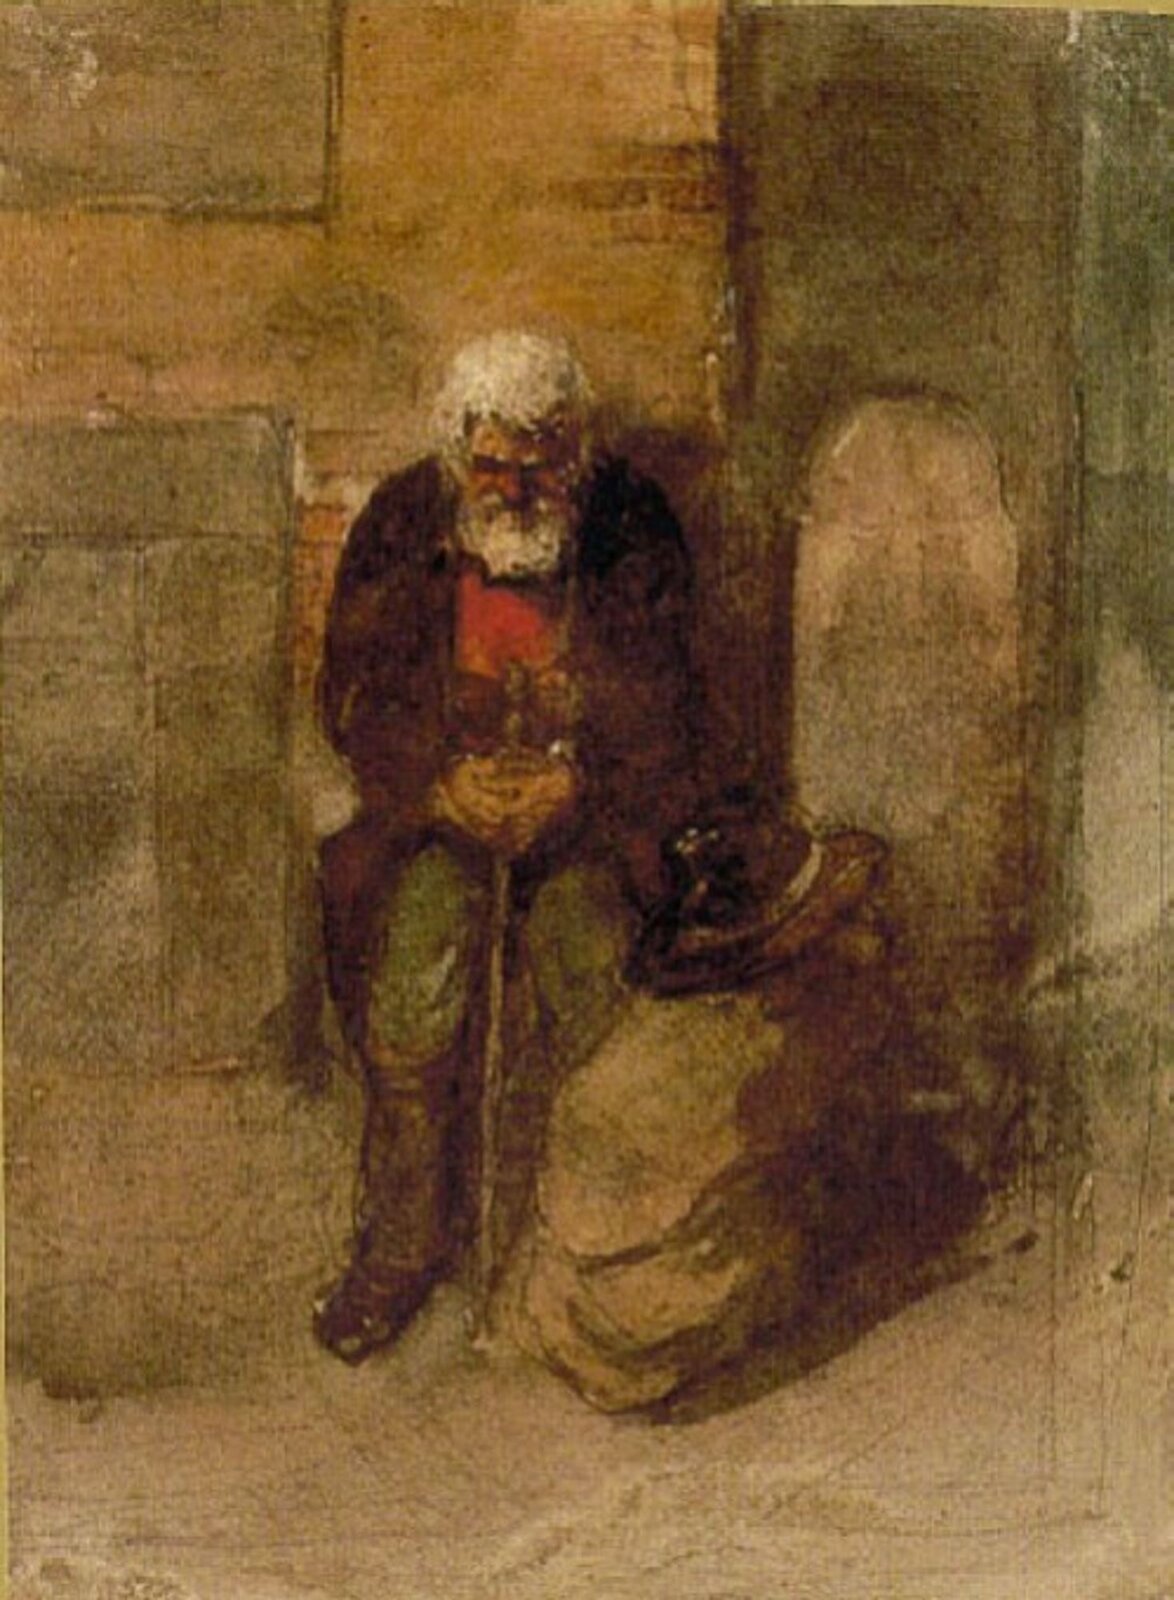 Fotografia przedstawia obraz pt. „Szmul” wykonany przez Hartmanna. Dzieło przedstawia siwego mężczyznę długą brodą, który ubrany jest w brązowy płaszcz i zielone spodnie. Ma spuszczoną głowę. Między nogami trzyma laskę, obok postaci znajduje się wypełniony worek i kapelusz.